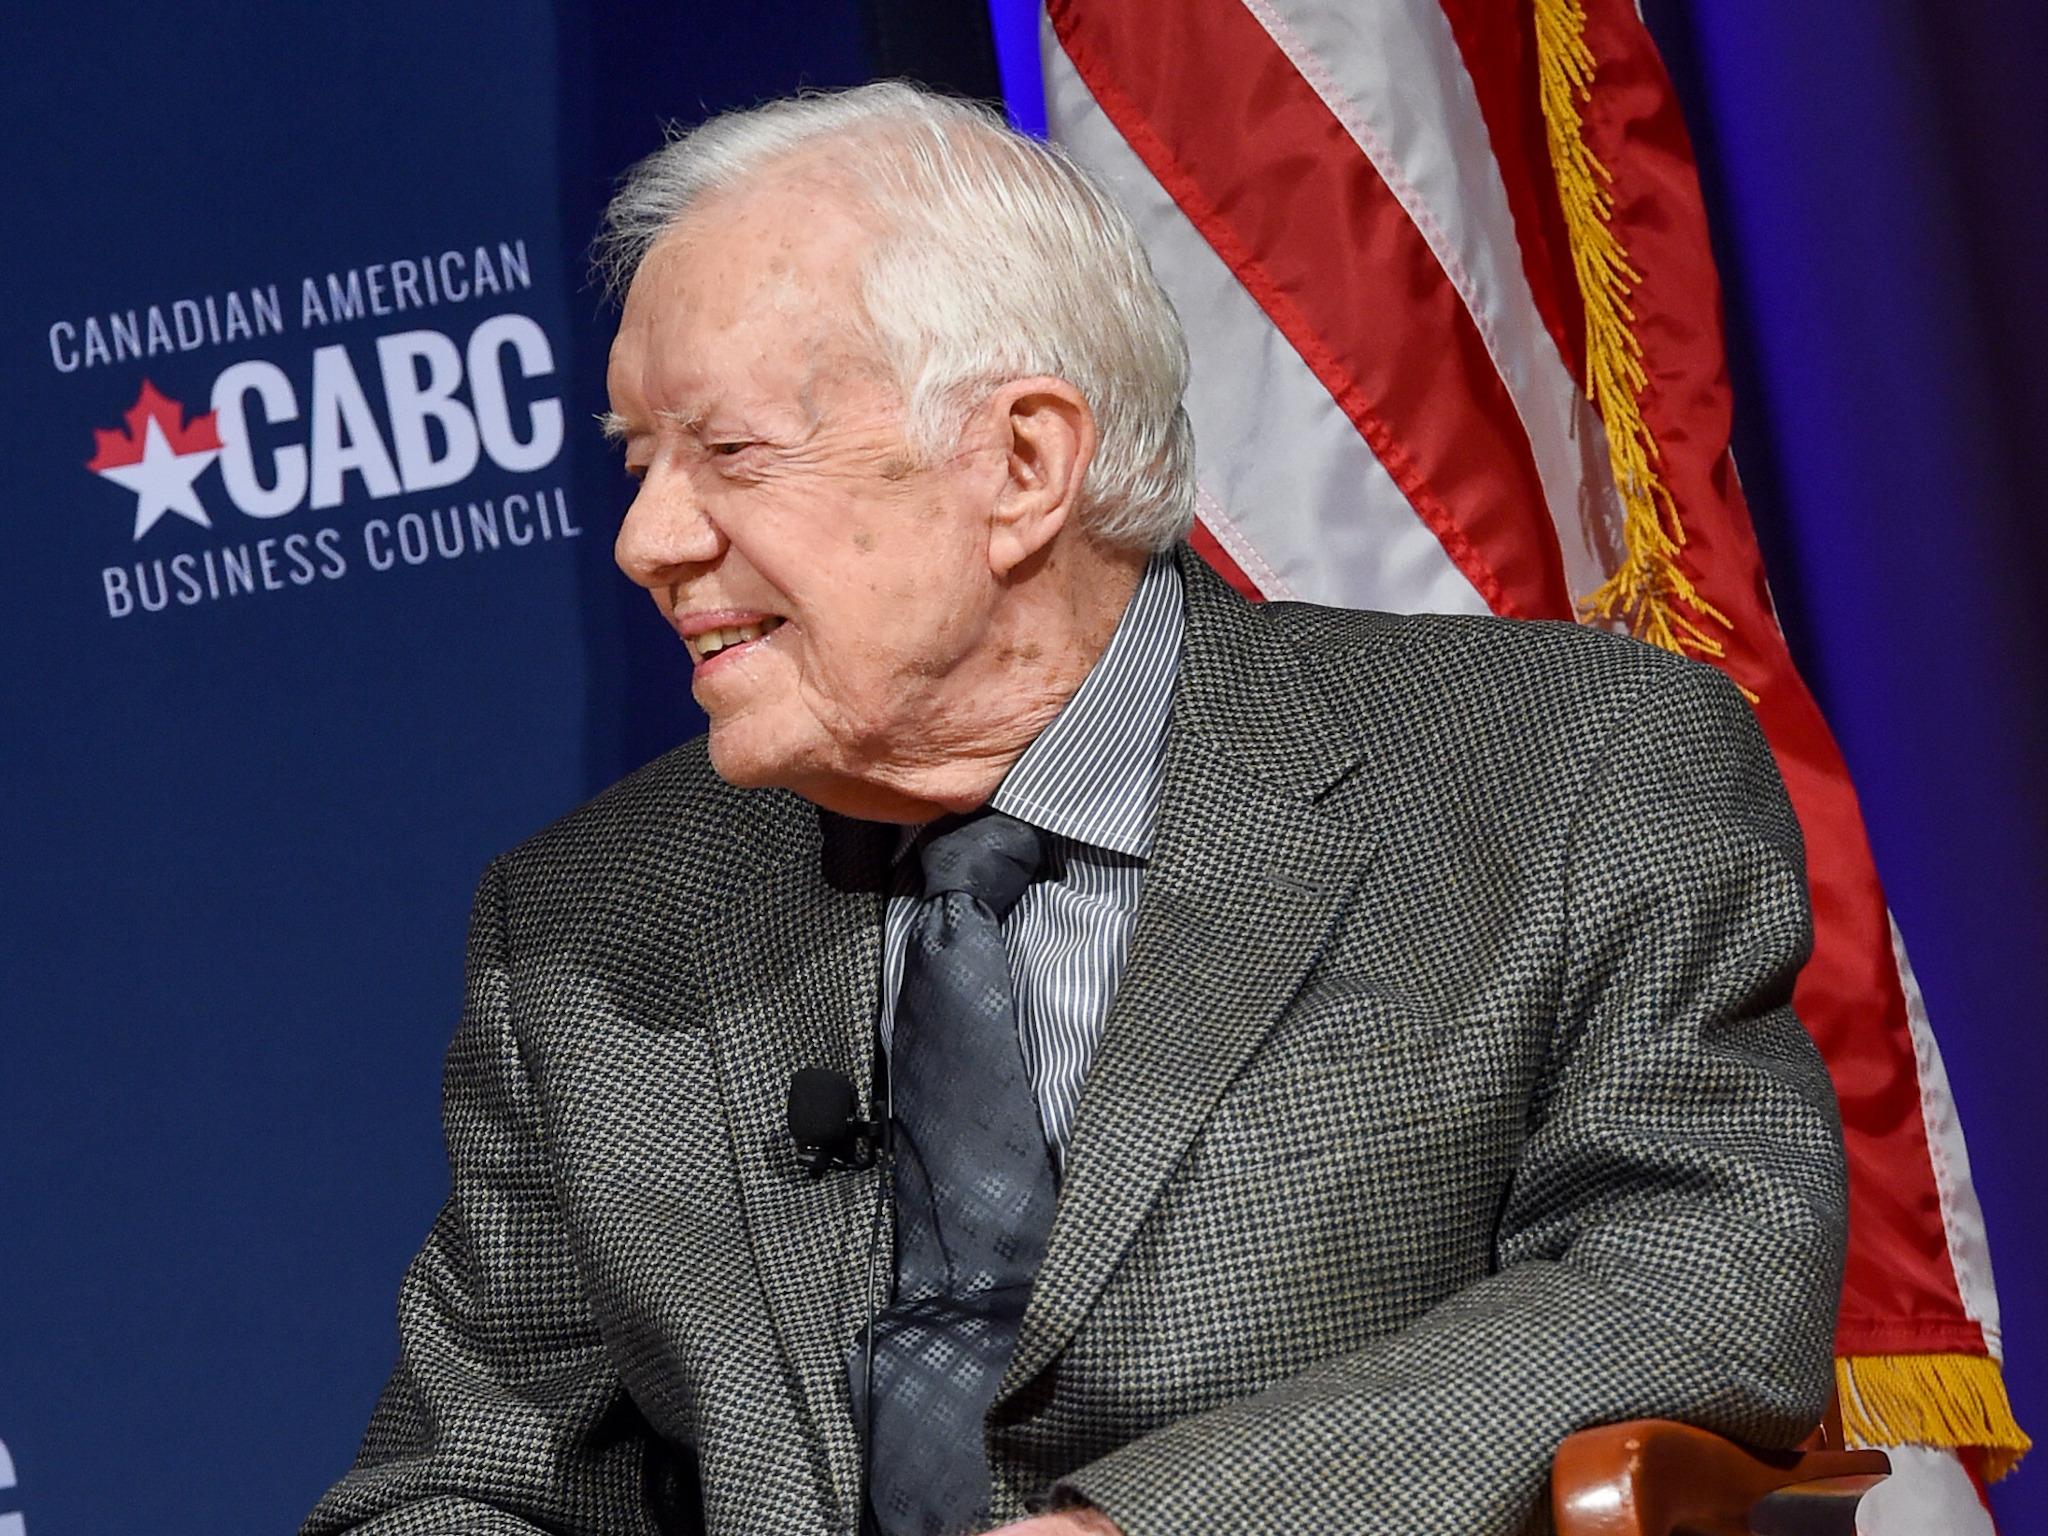 Former US President Jimmy Carter